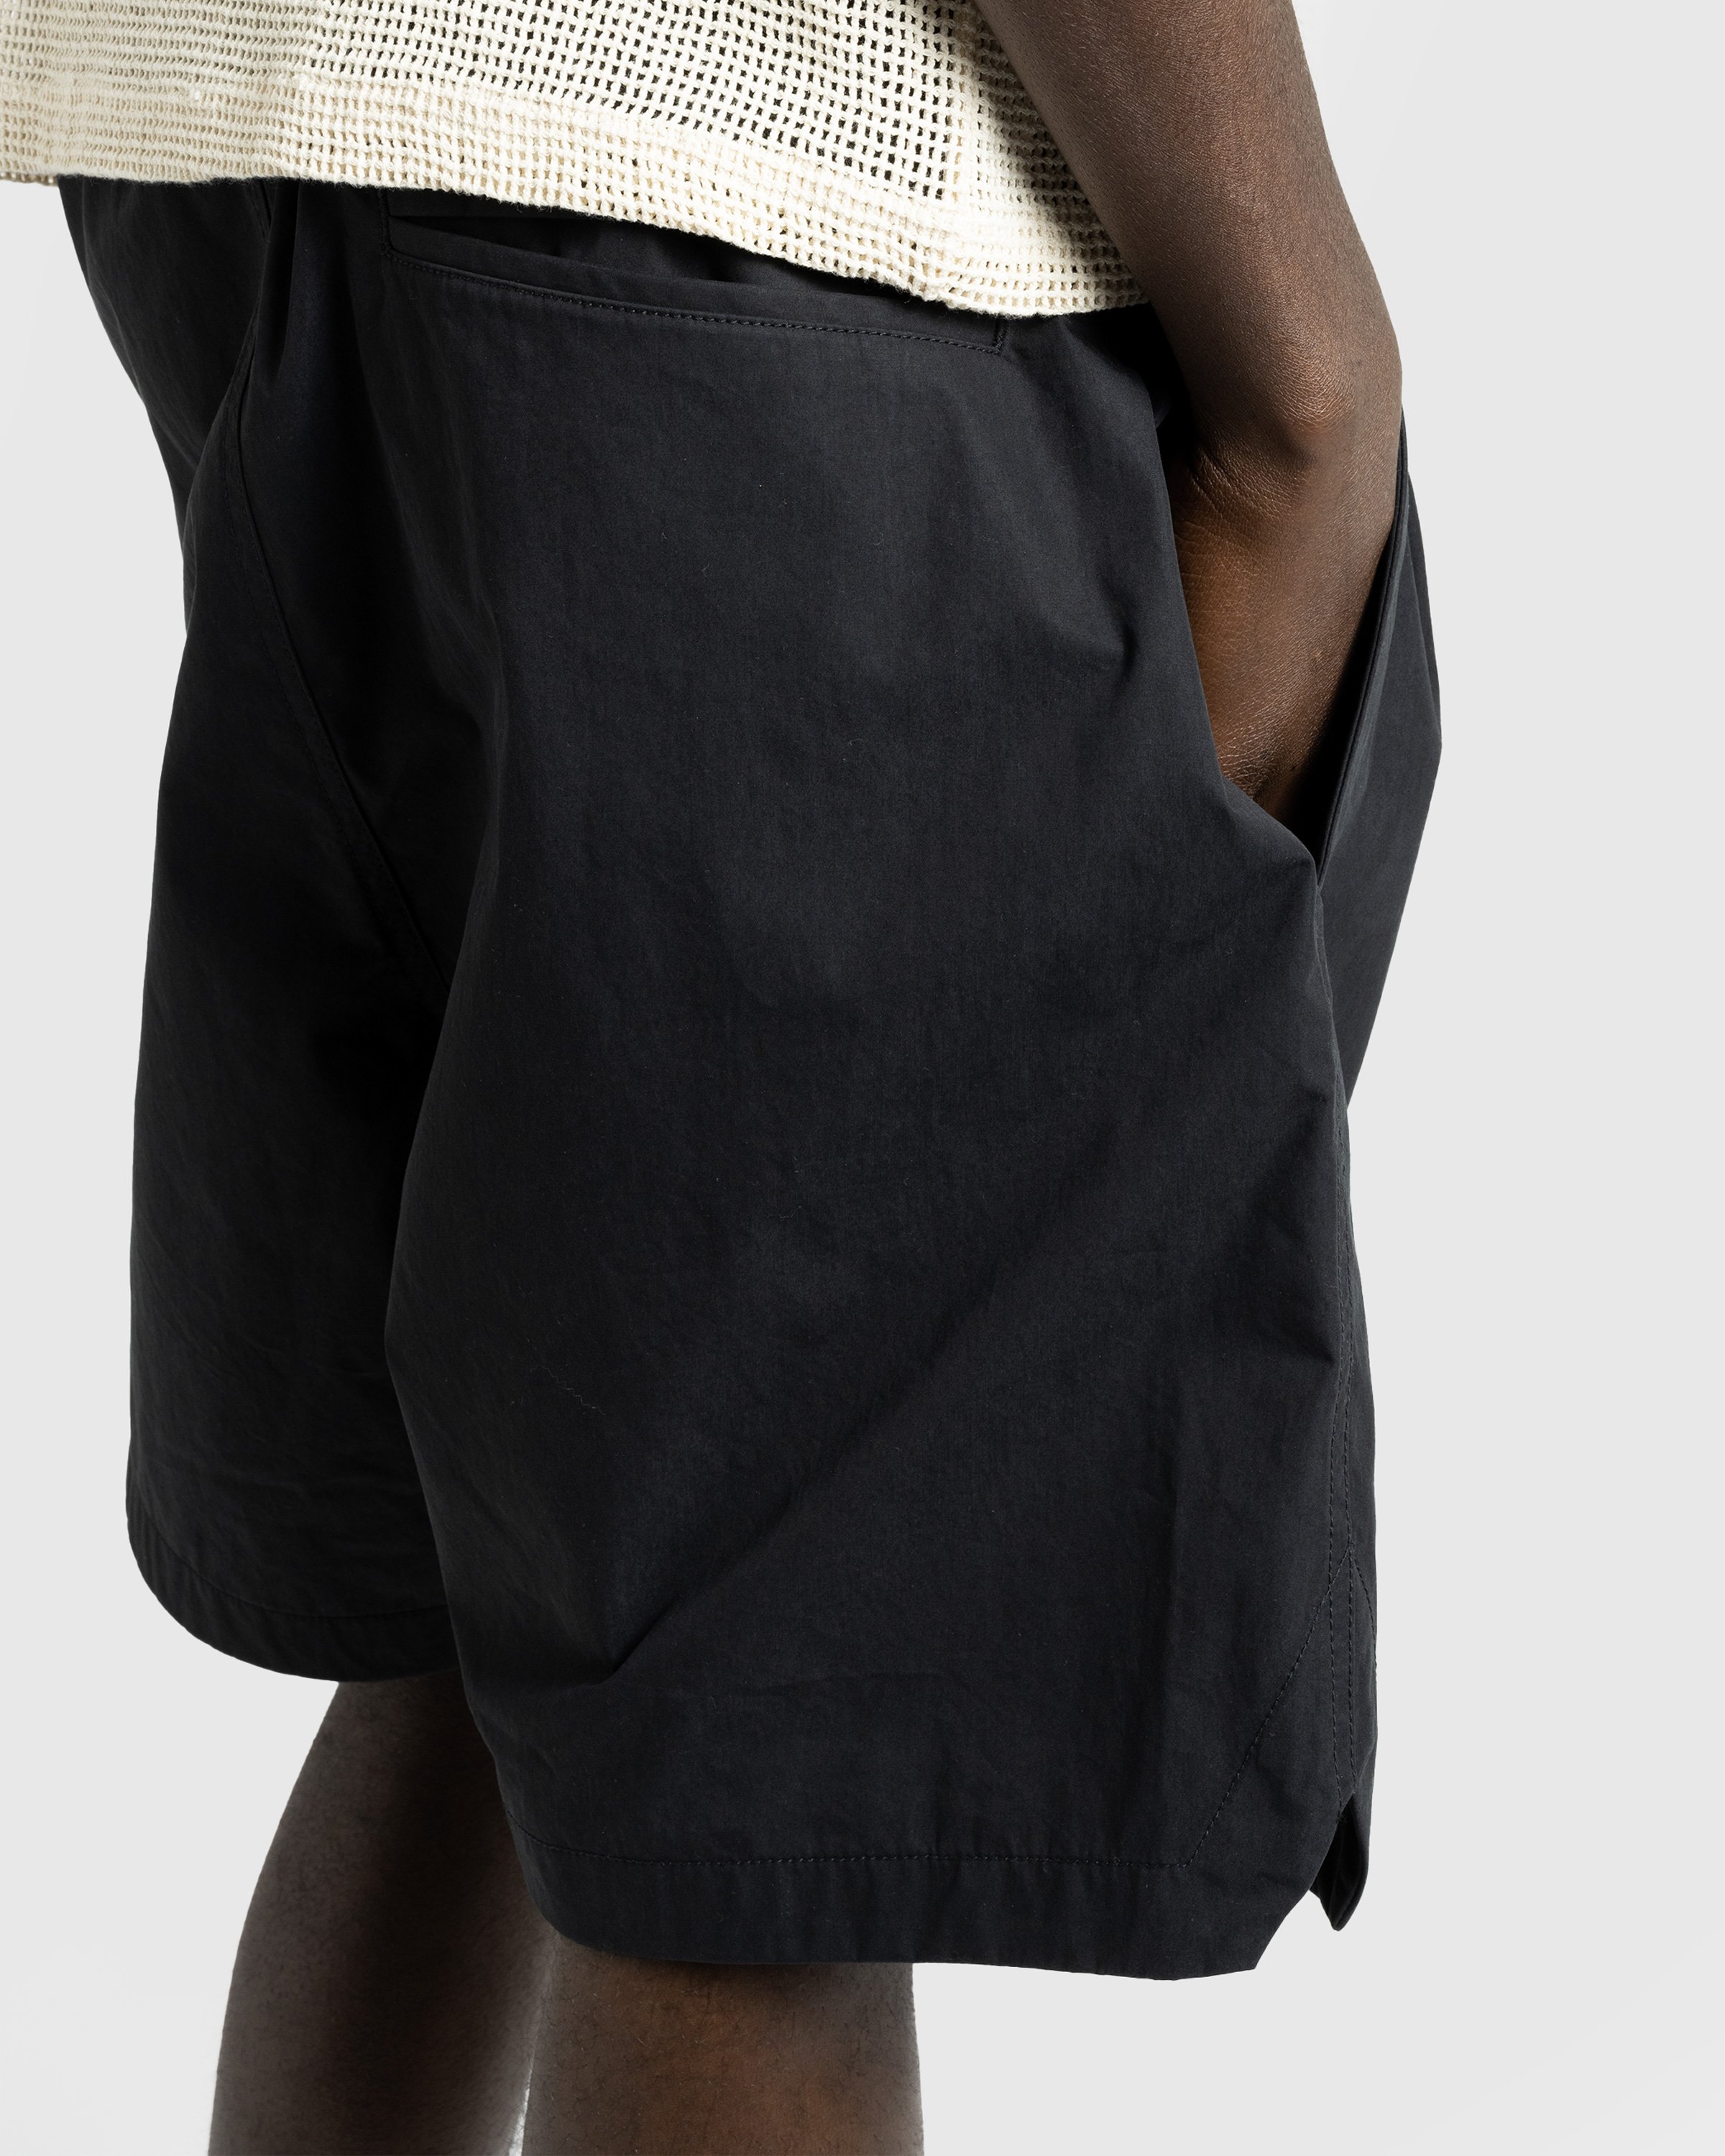 Highsnobiety HS05 - Weather Cloth Nylon Shorts Black - Clothing - Black - Image 6